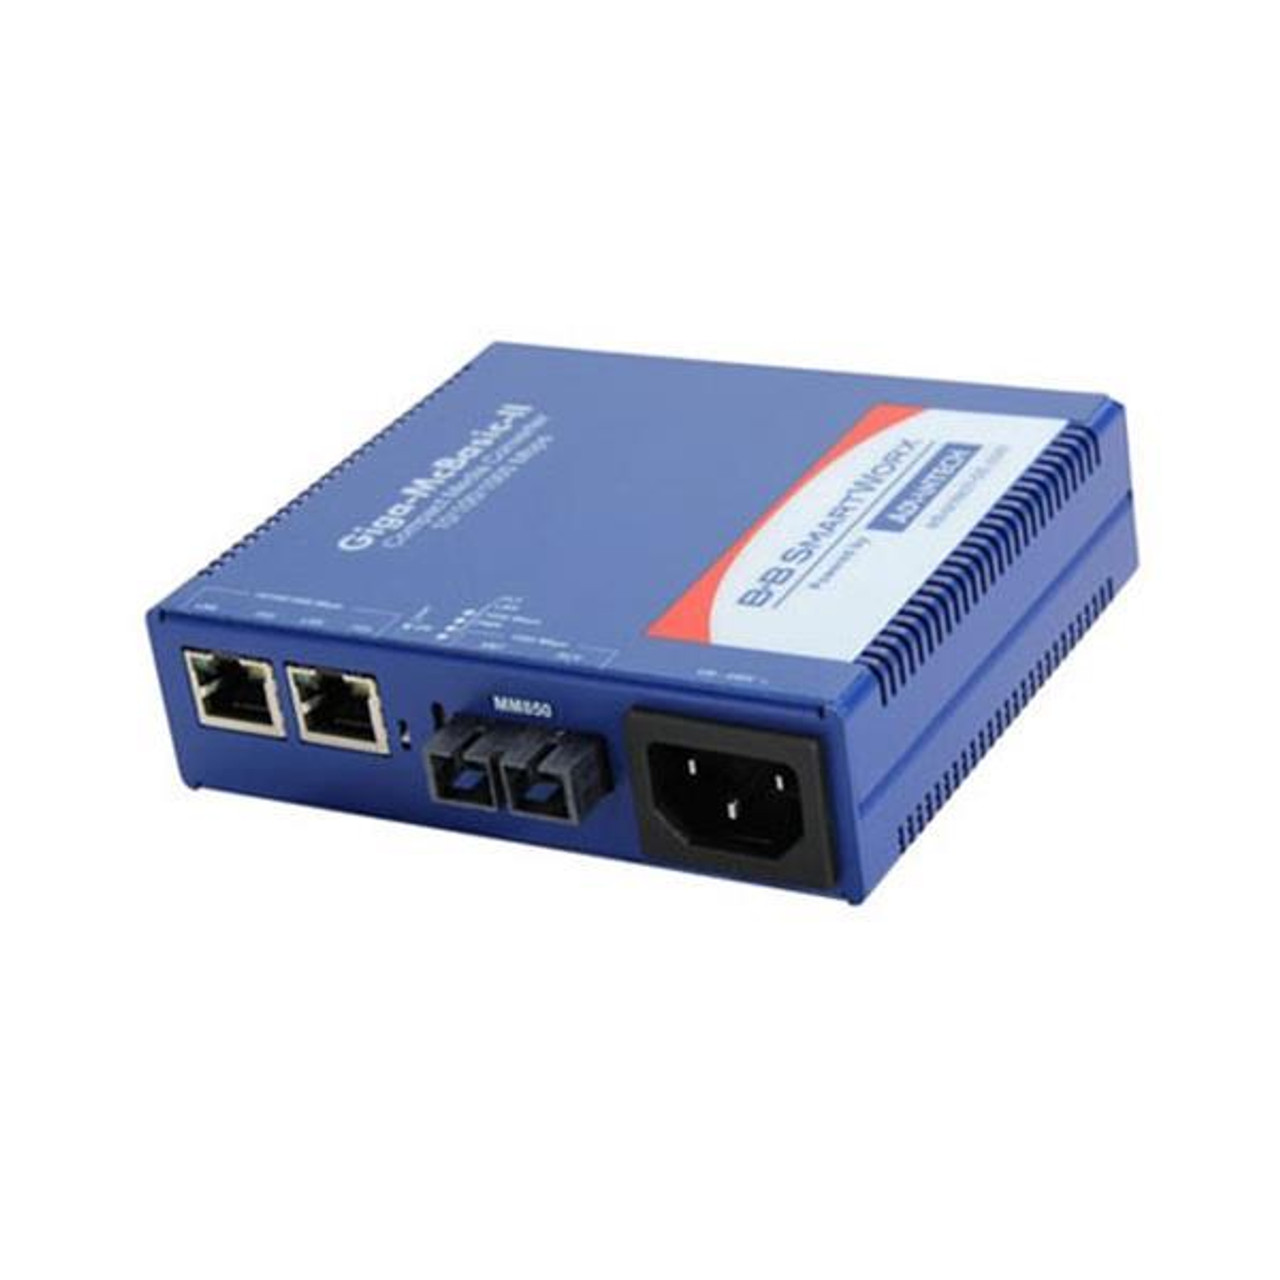 Advantech 100Mbps and 10/100/1000Mbps 2x Network RJ-45 1x SC Ports Multi-mode Gigabit Ethernet 10/100/1000Base-TX 1000Base-SX Desktop DIN Rail